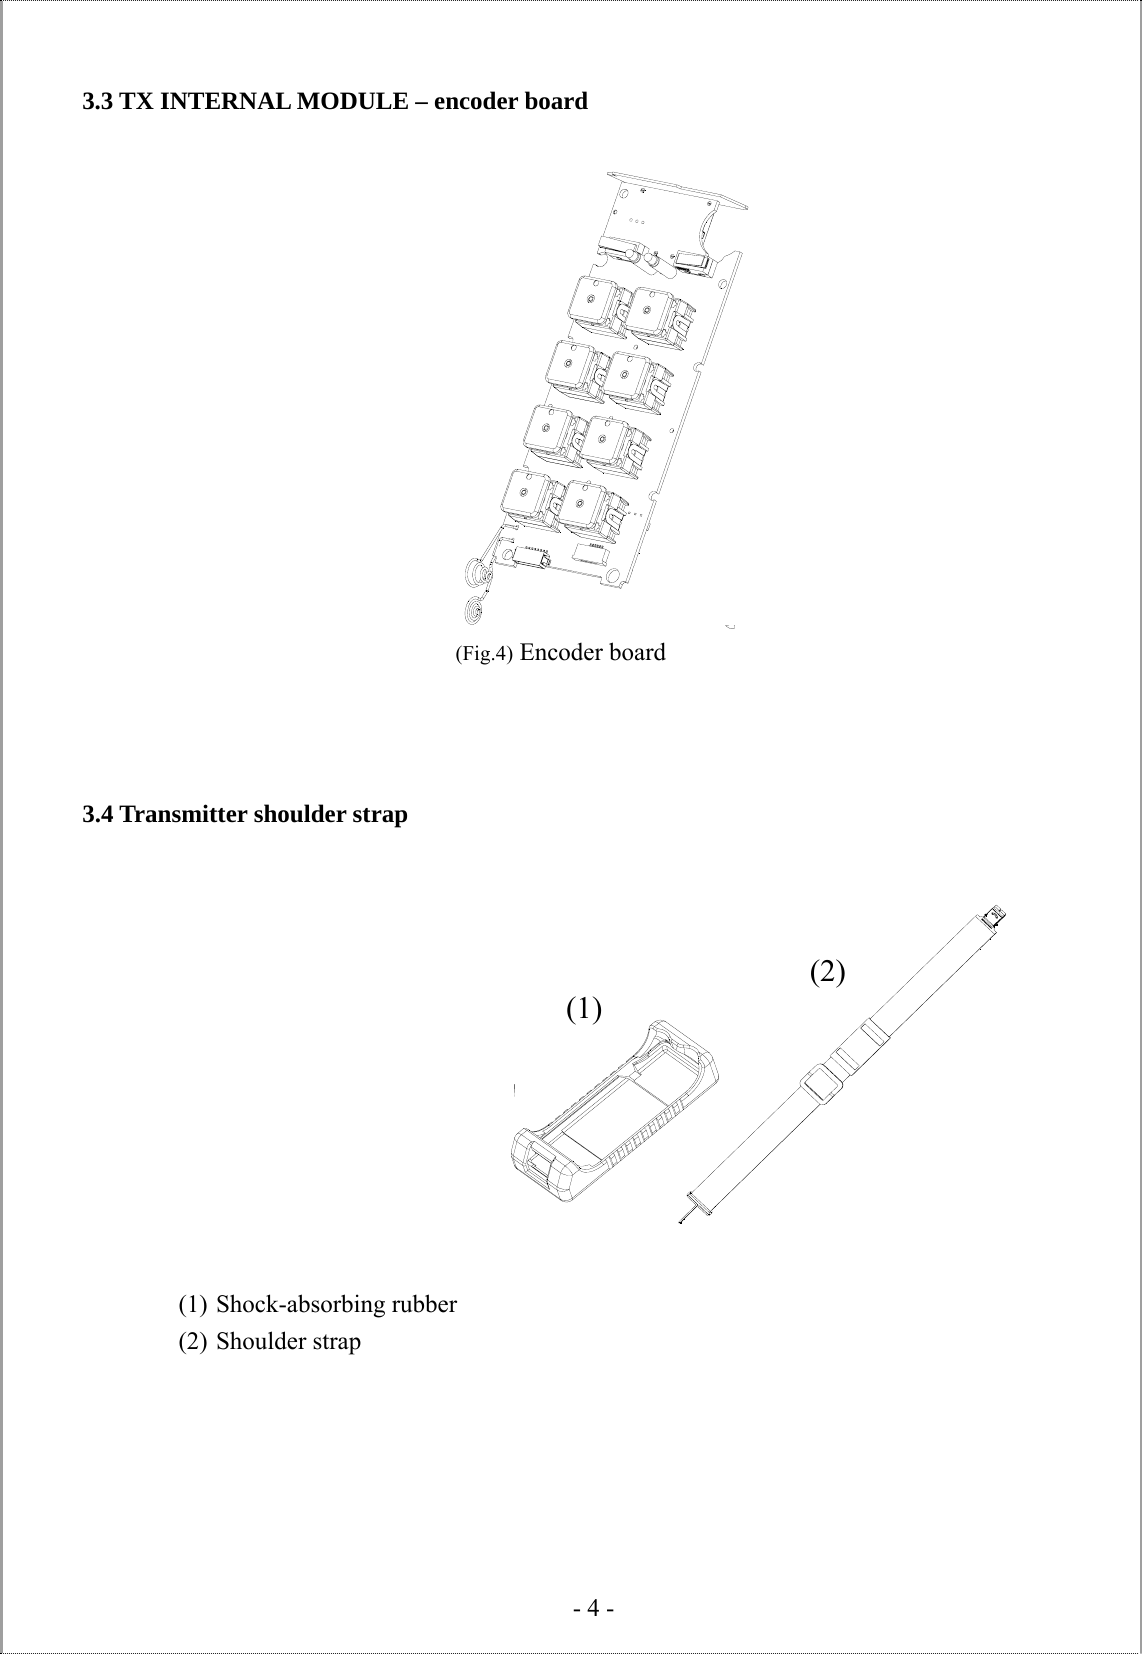   - 4 -  3.3 TX INTERNAL MODULE – encoder board                           3.4 Transmitter shoulder strap                      (1) Shock-absorbing rubber (2) Shoulder strap   (Fig.4) Encoder board (1)(2) 